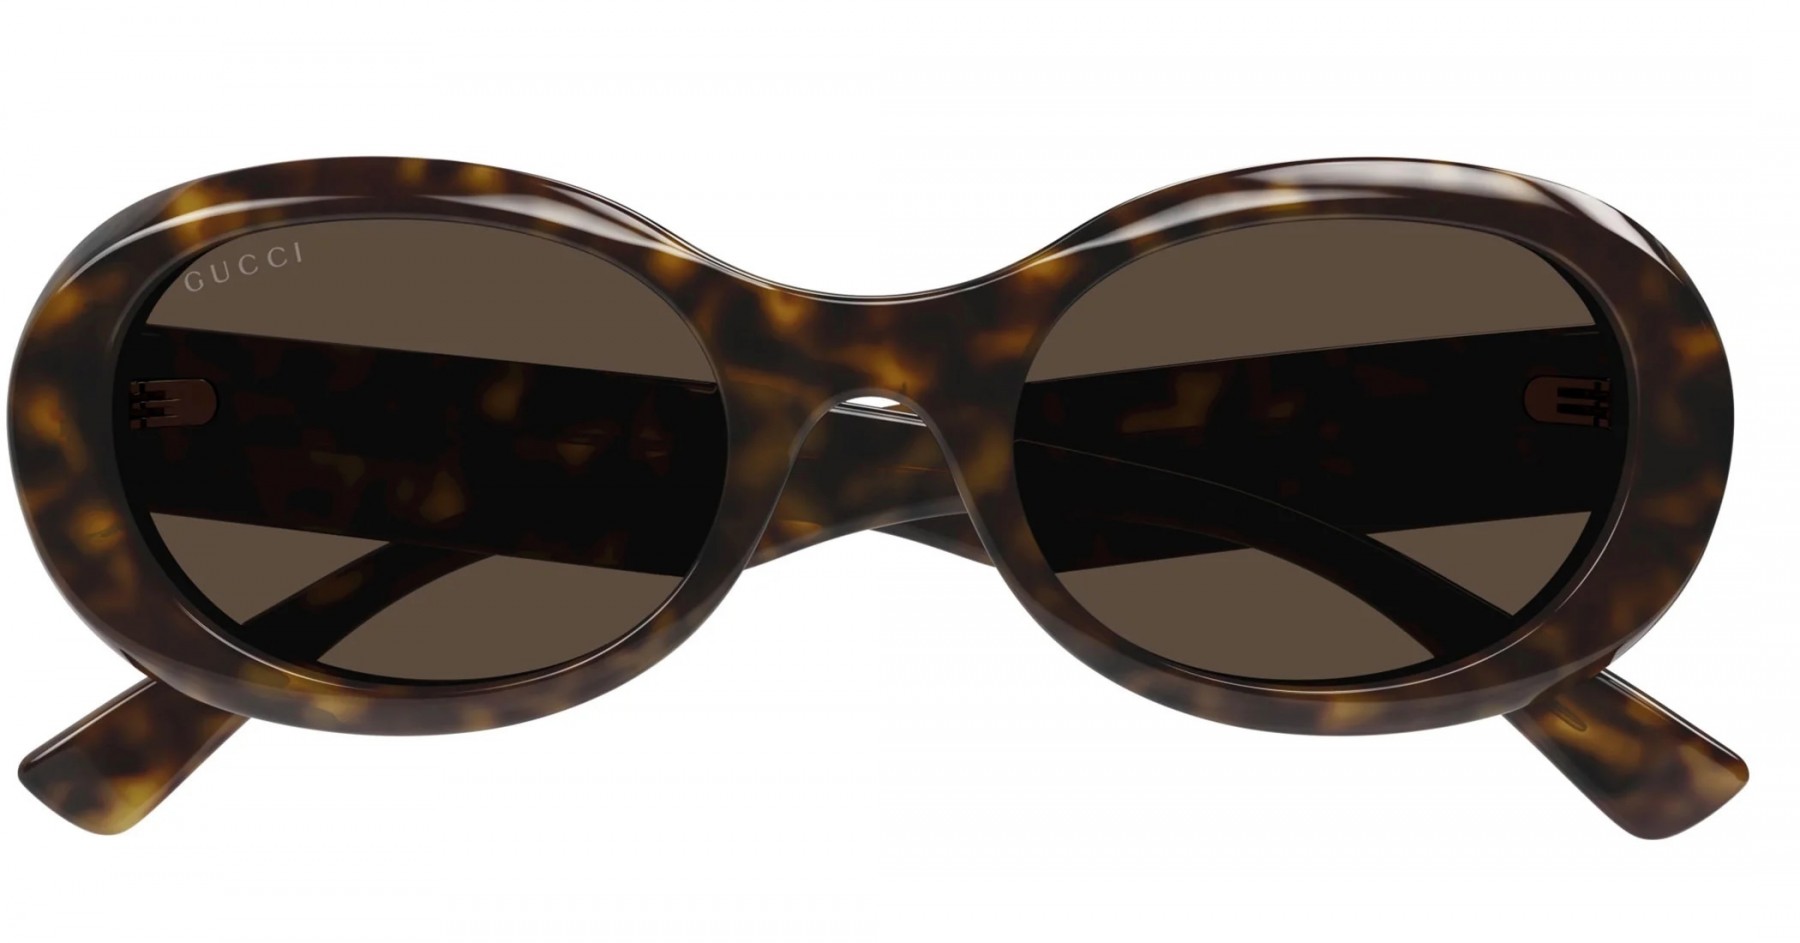 Gucci 1587 002 - Oculos de Sol